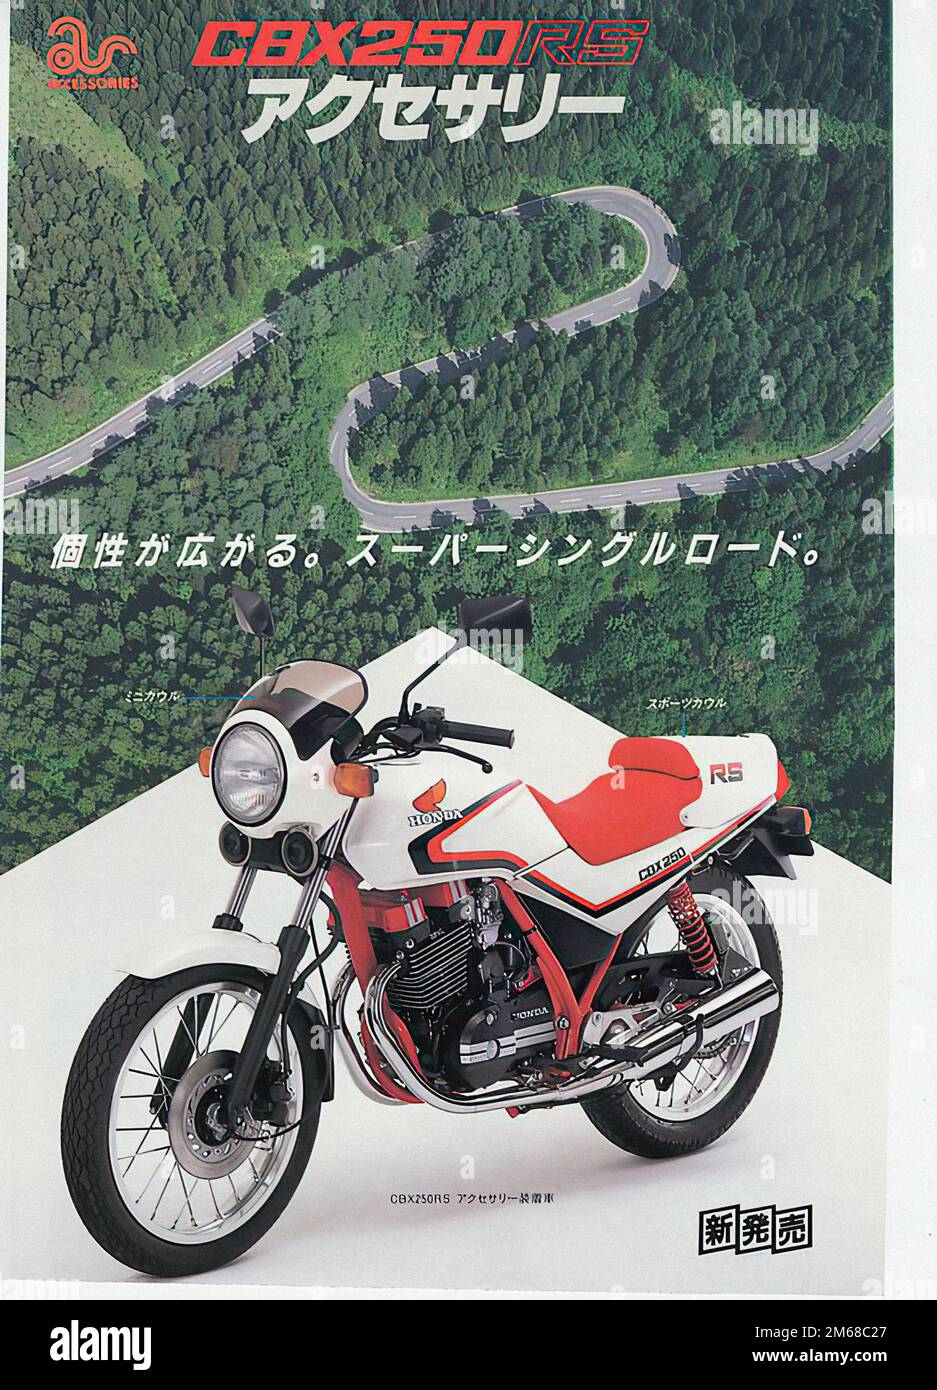 ホンダCBX 250RS - オートバイ